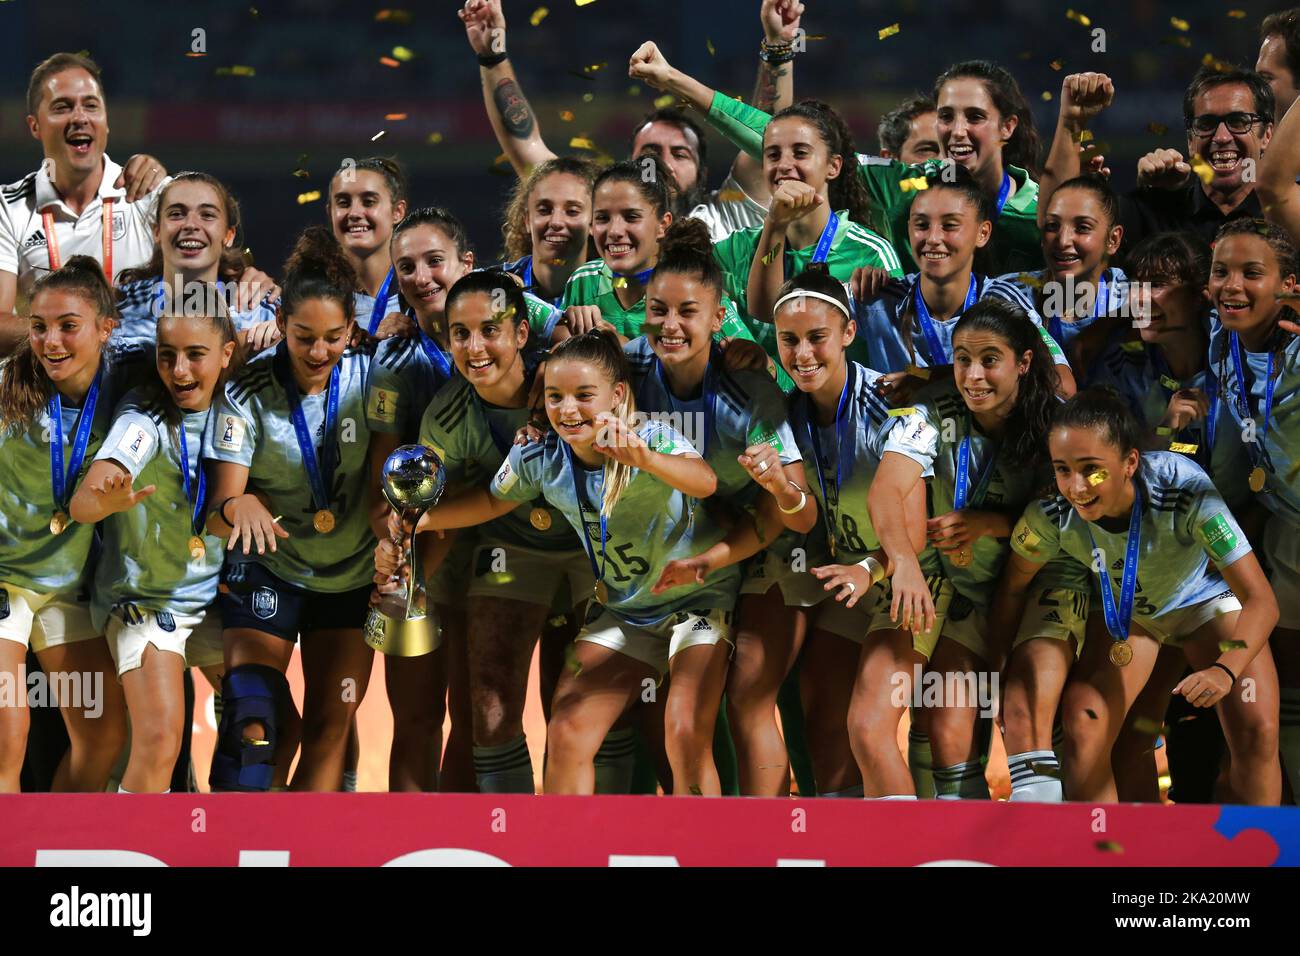 Navi Mumbai, Indien. 30. Oktober 2022. Spanische Teammitglieder feiern auf dem Podium bei der Verleihung der FIFA U17-Fußballweltmeisterschaft der Frauen in Navi Mumbai, Indien, am 30. Oktober 2022. Quelle: Javed Dar/Xinhua/Alamy Live News Stockfoto